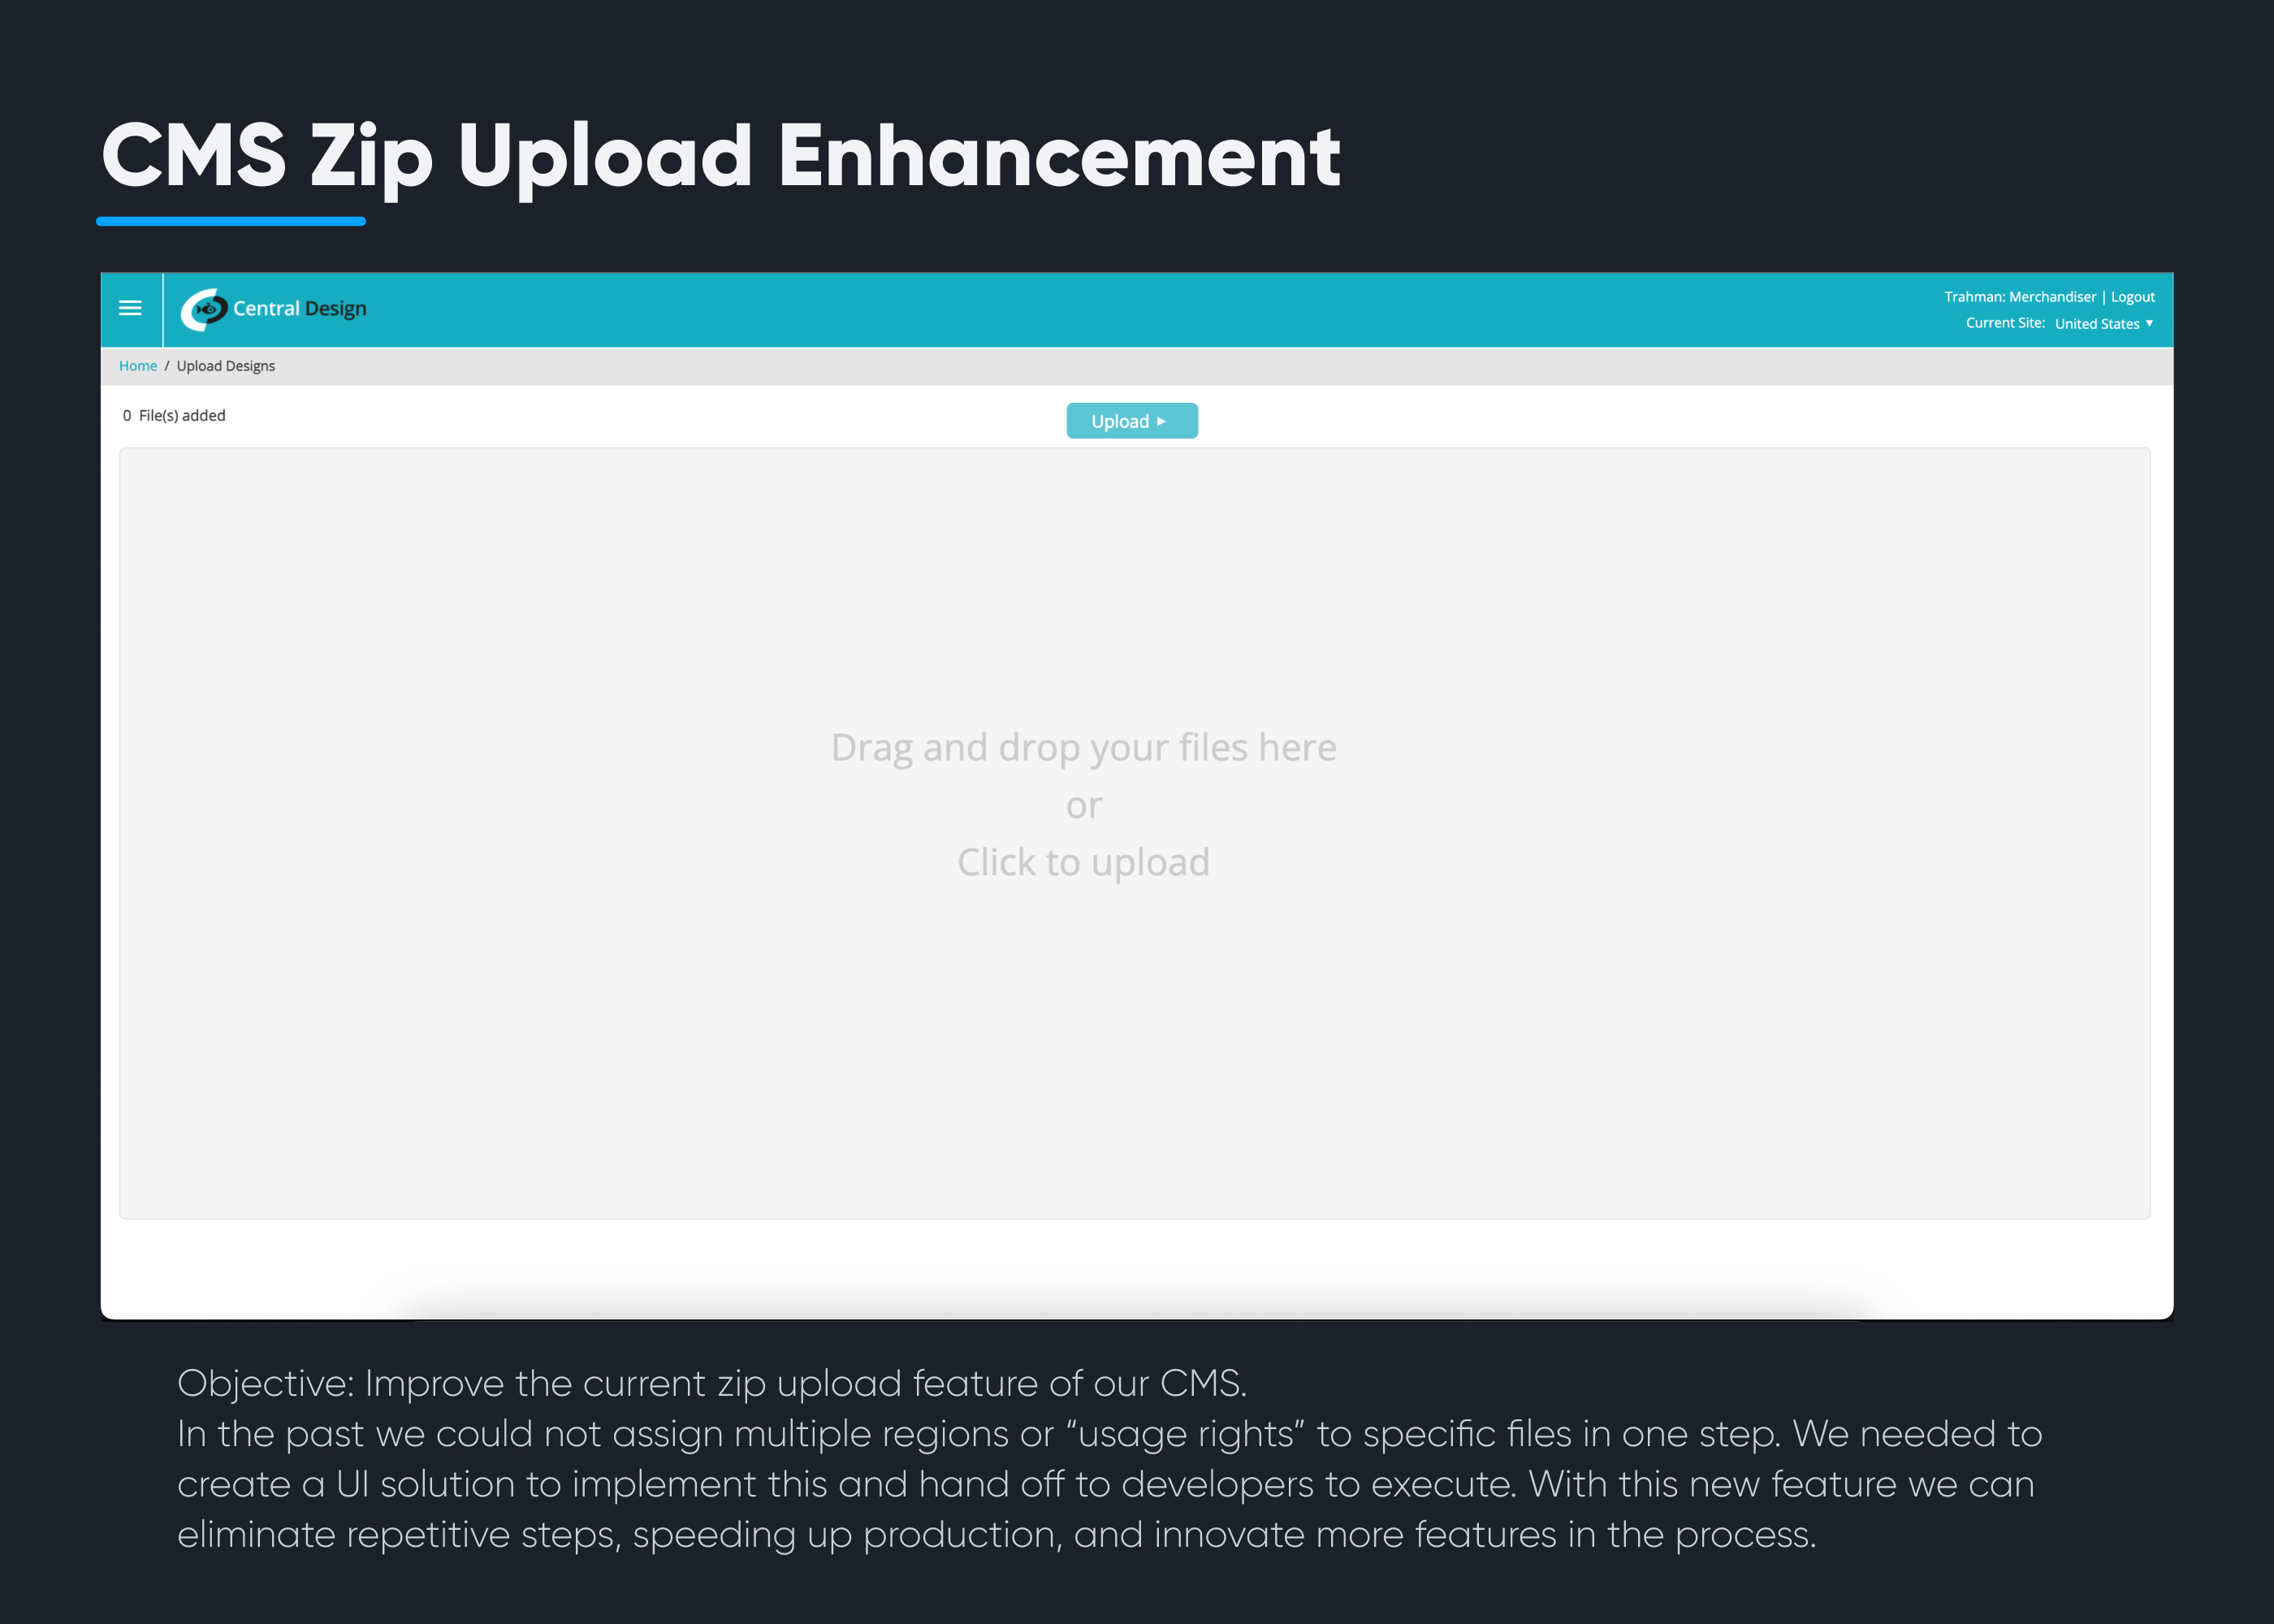 Zip Upload Overview